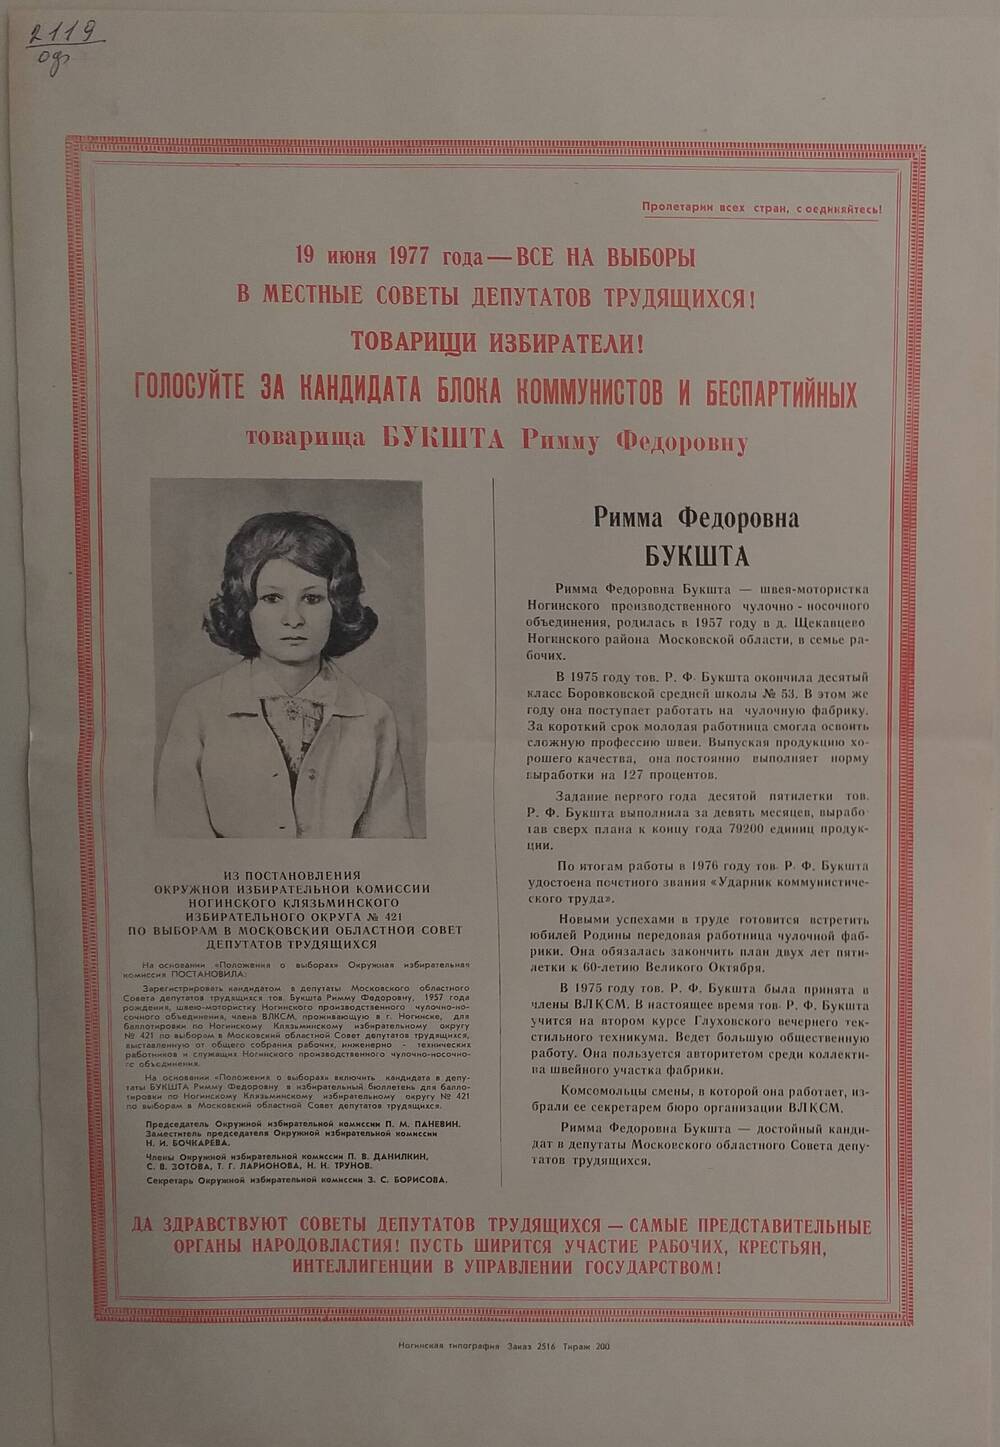 Плакат Призыв к голосованию  на выборах за товарища Бакшта Римму Фёдоровну - швея-мотористка Ногинского производственного чулочно - носочного объединения, 19 июня 1977 года.